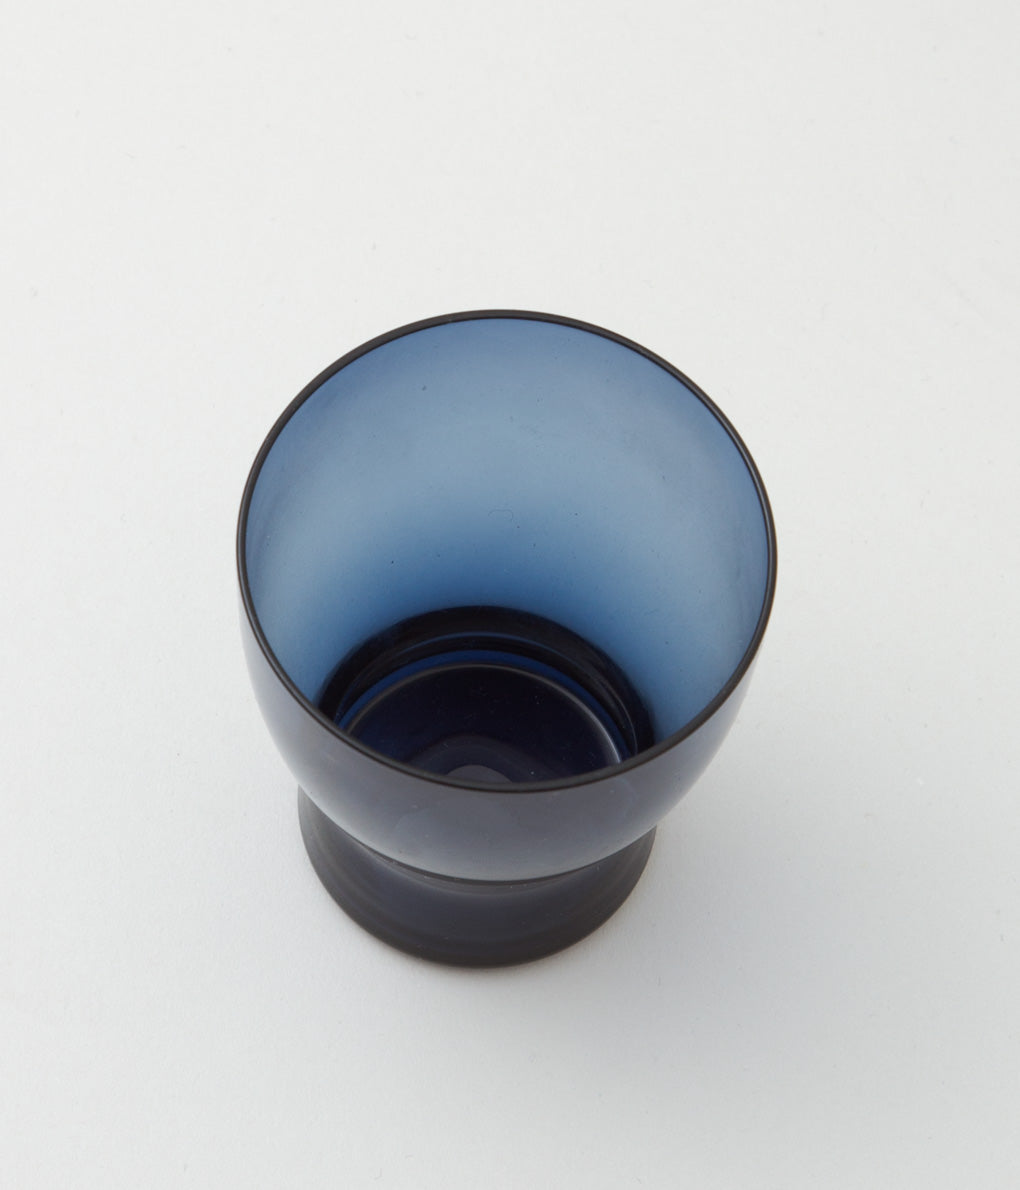 NUUTAJARVI (SAARA HOPEA) "GLASS 1710" (BLUE)